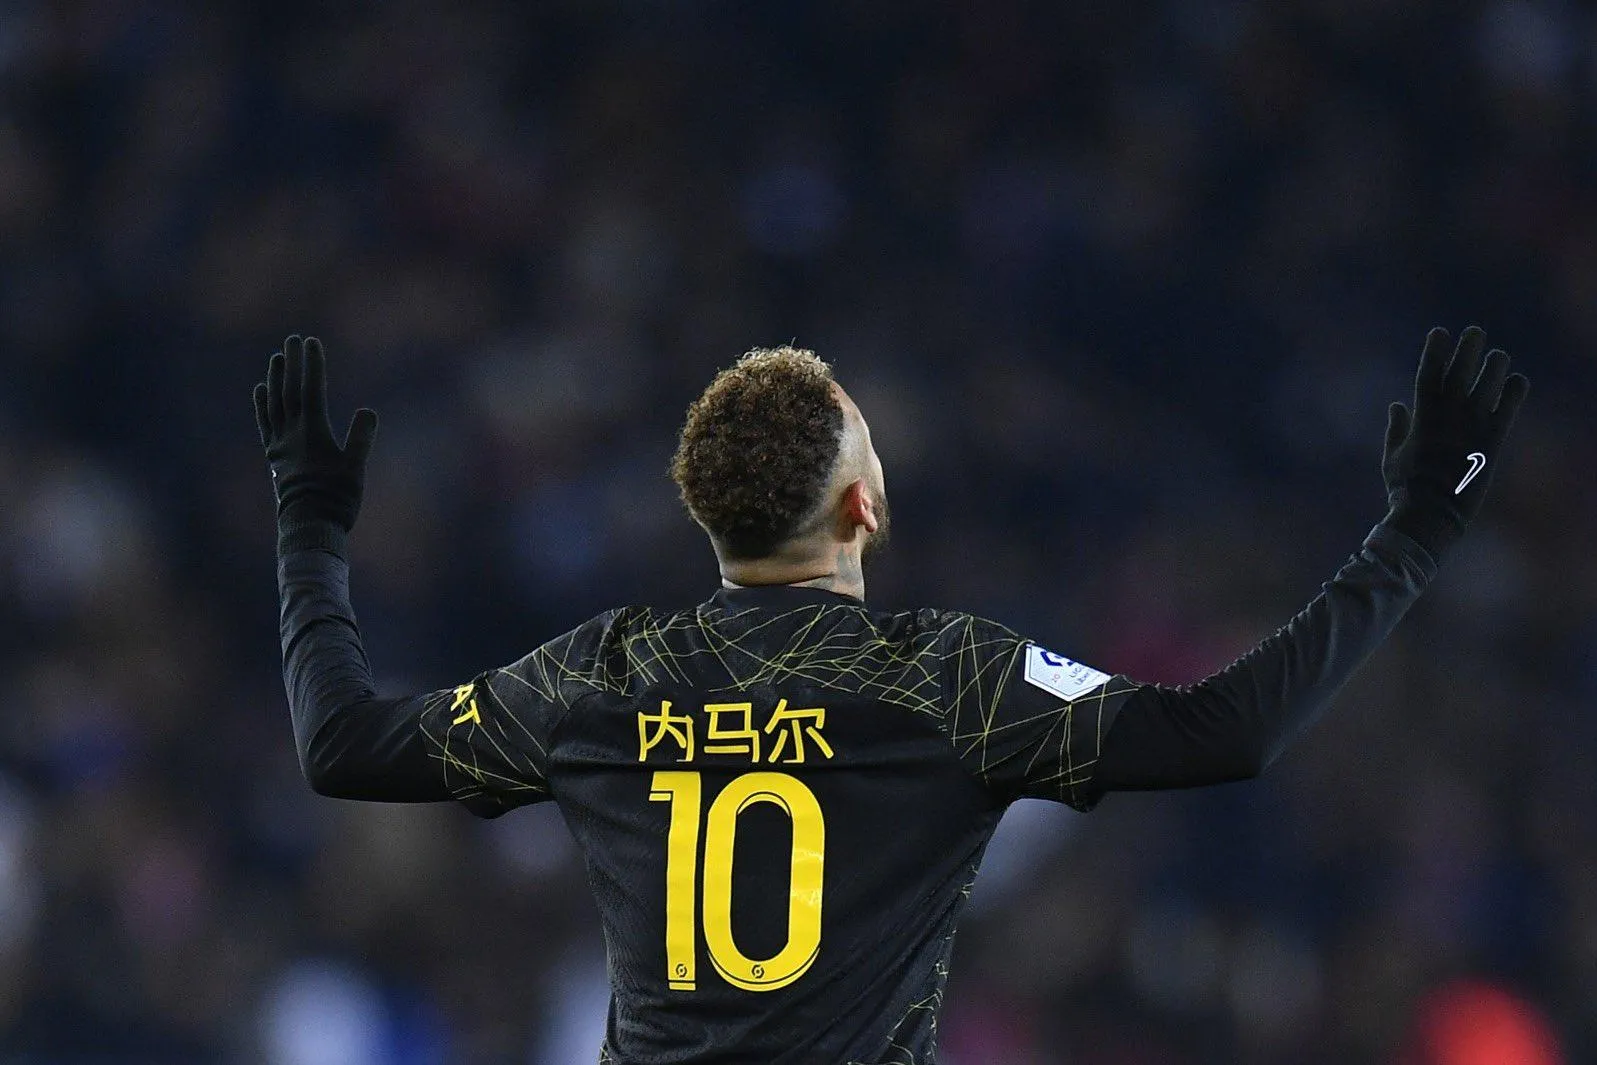 Neymar marca seu primeiro gol pelo Al Hilal; veja o lance